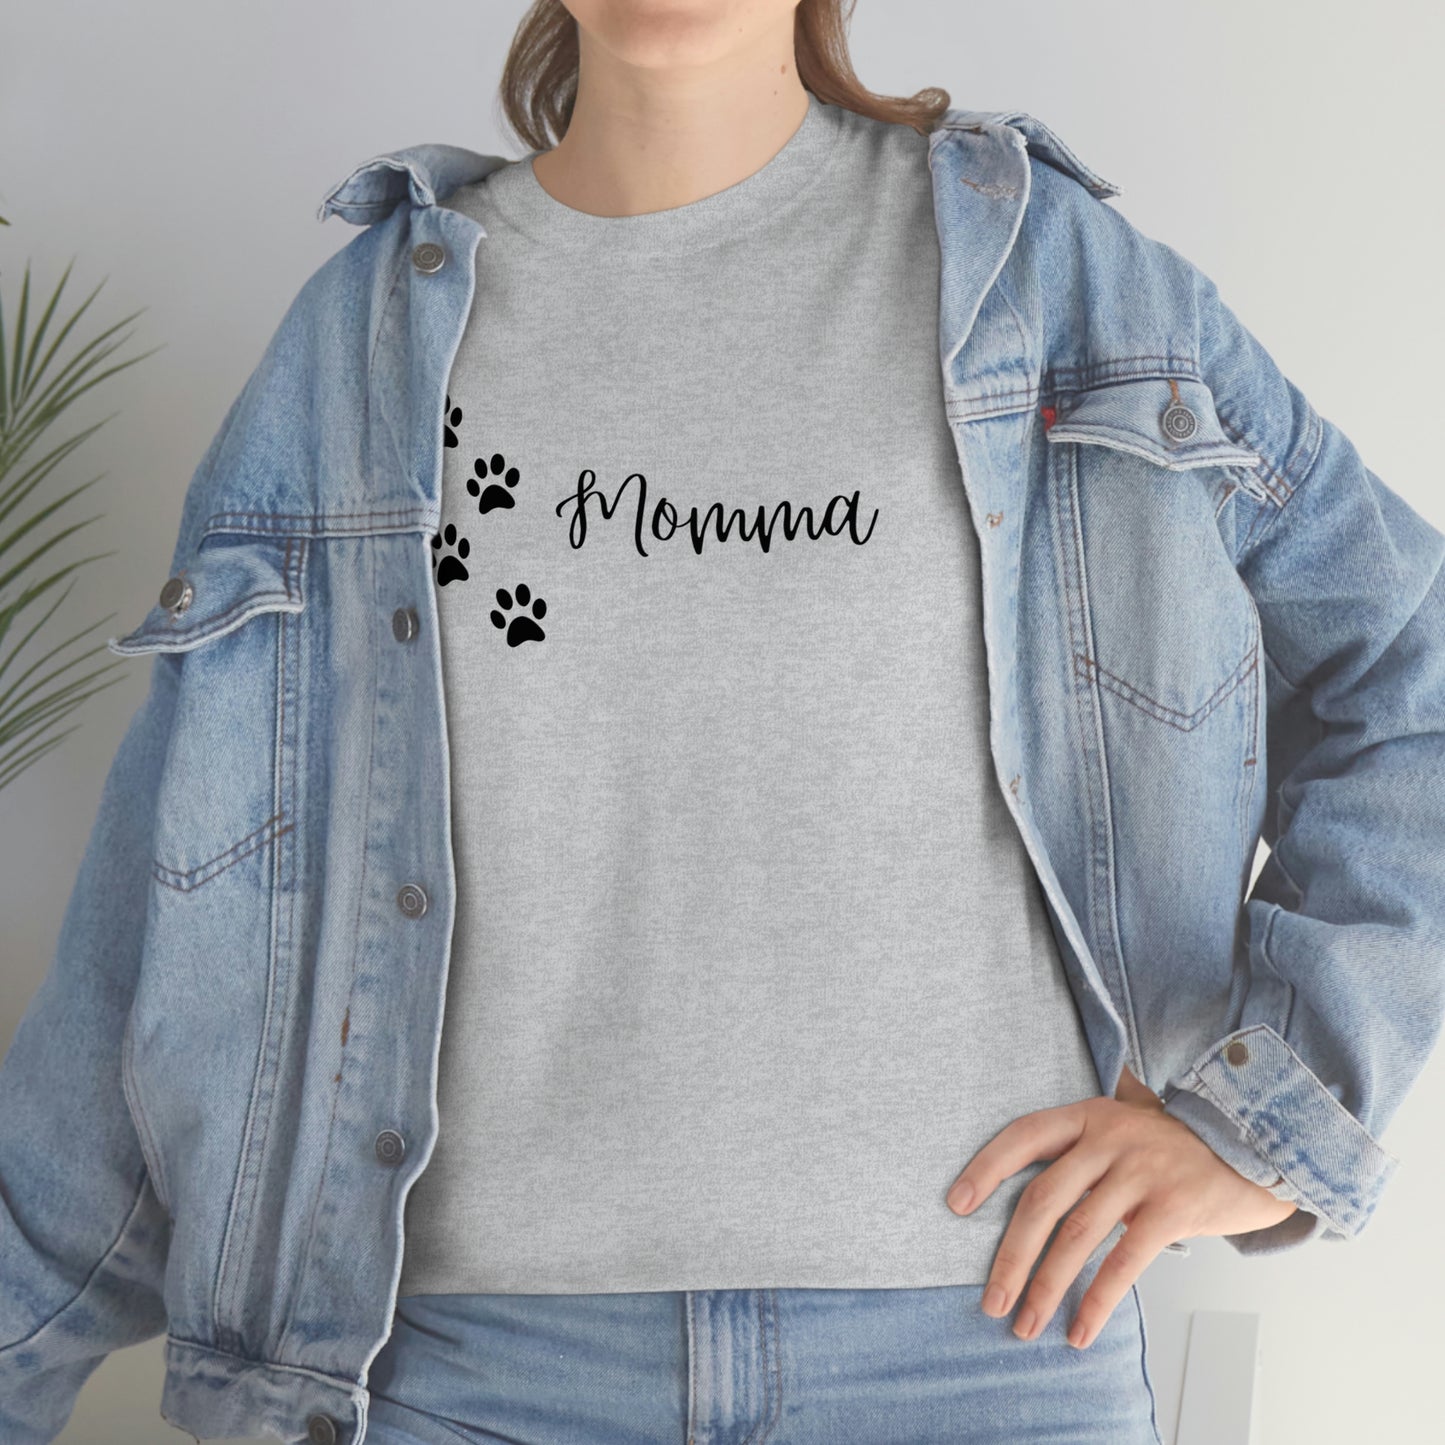 Dog or Cat Momma Tshirt